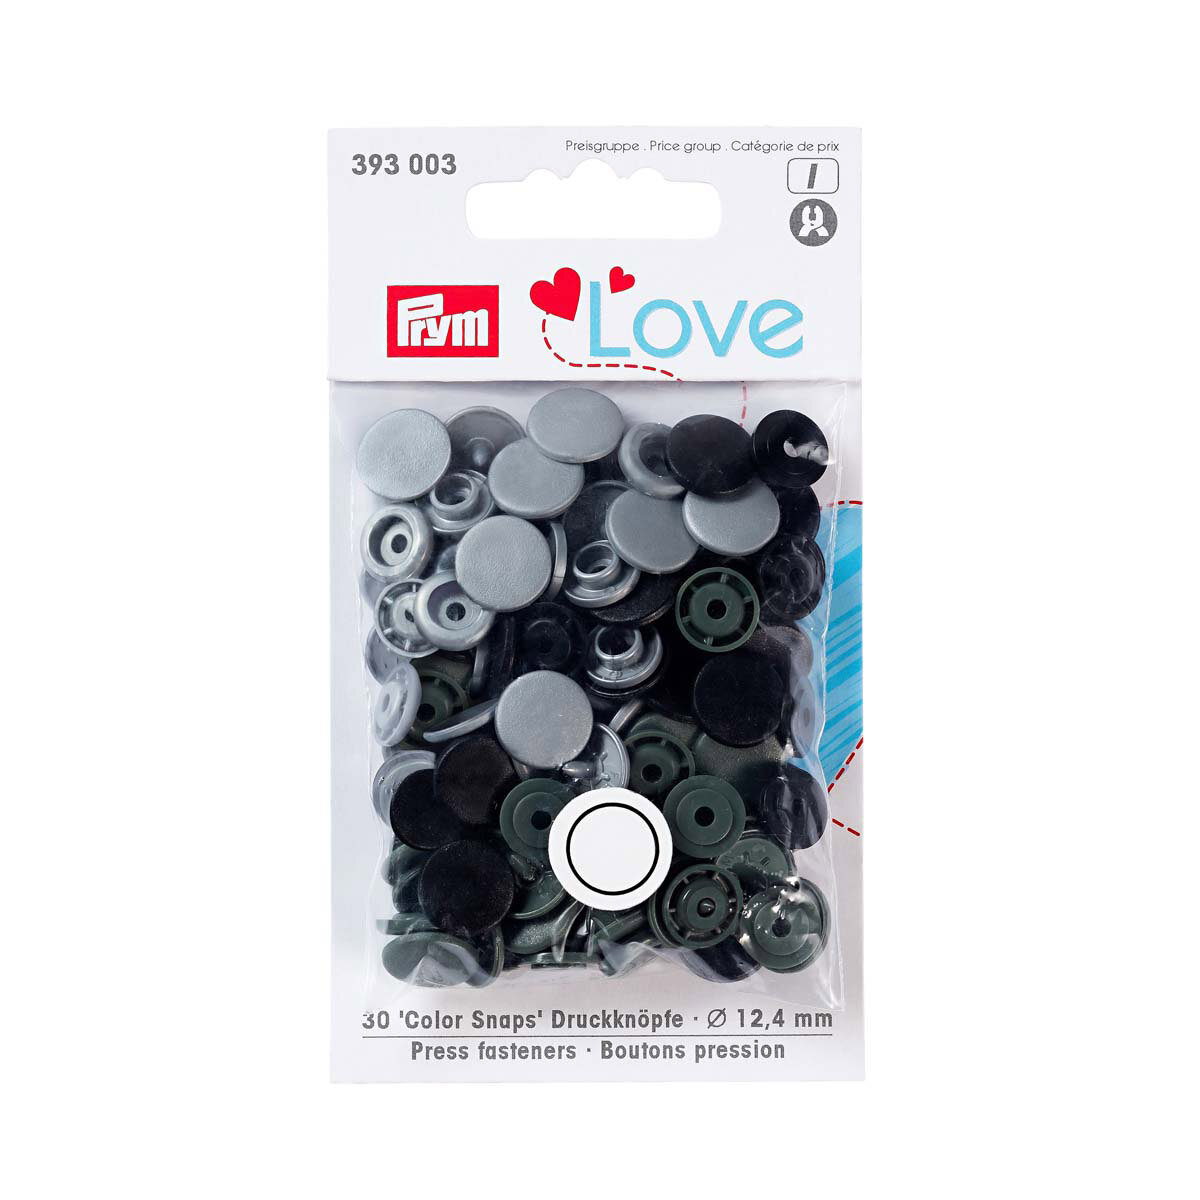 Kнопки Color Snaps 12,4 мм серый/черный 30 шт, Prym Love, 393003